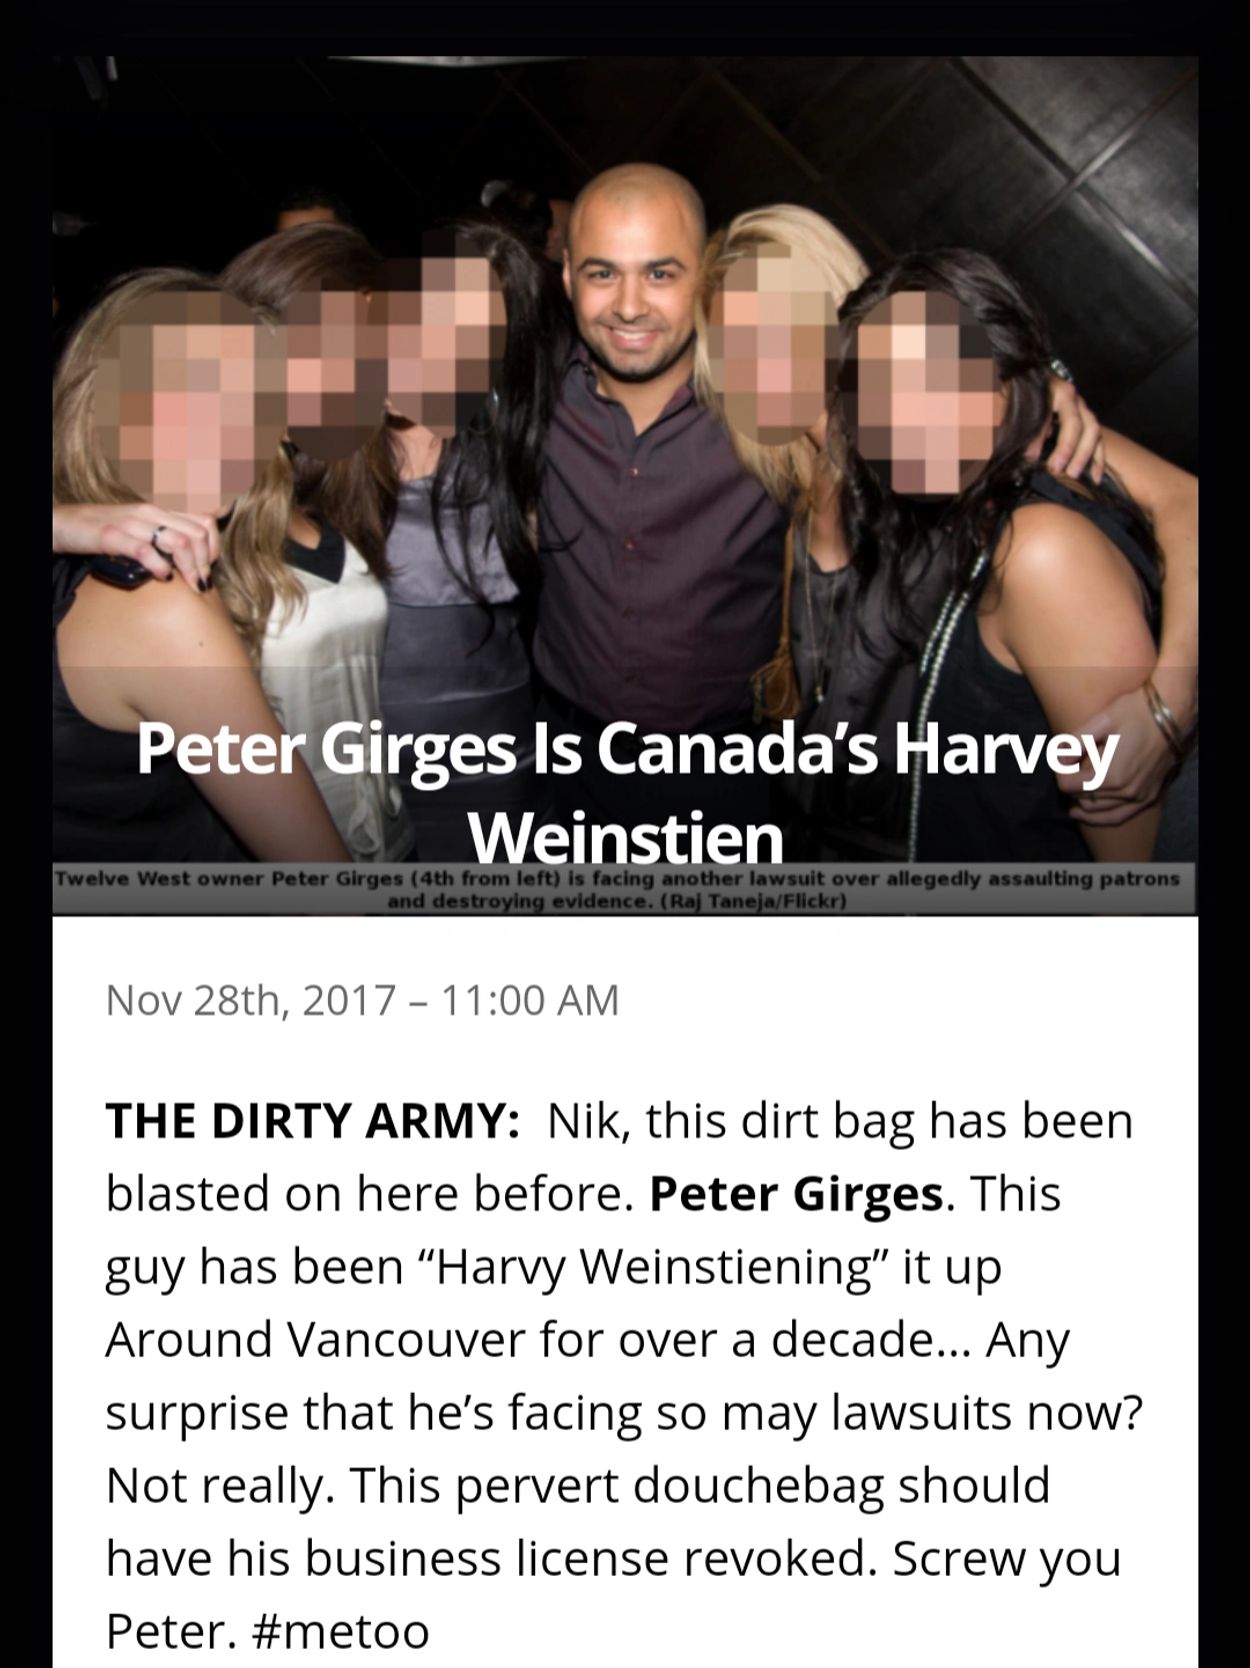 Peter Girges rapists, sadist, twelve west night club, Kamloops woman suing night club.